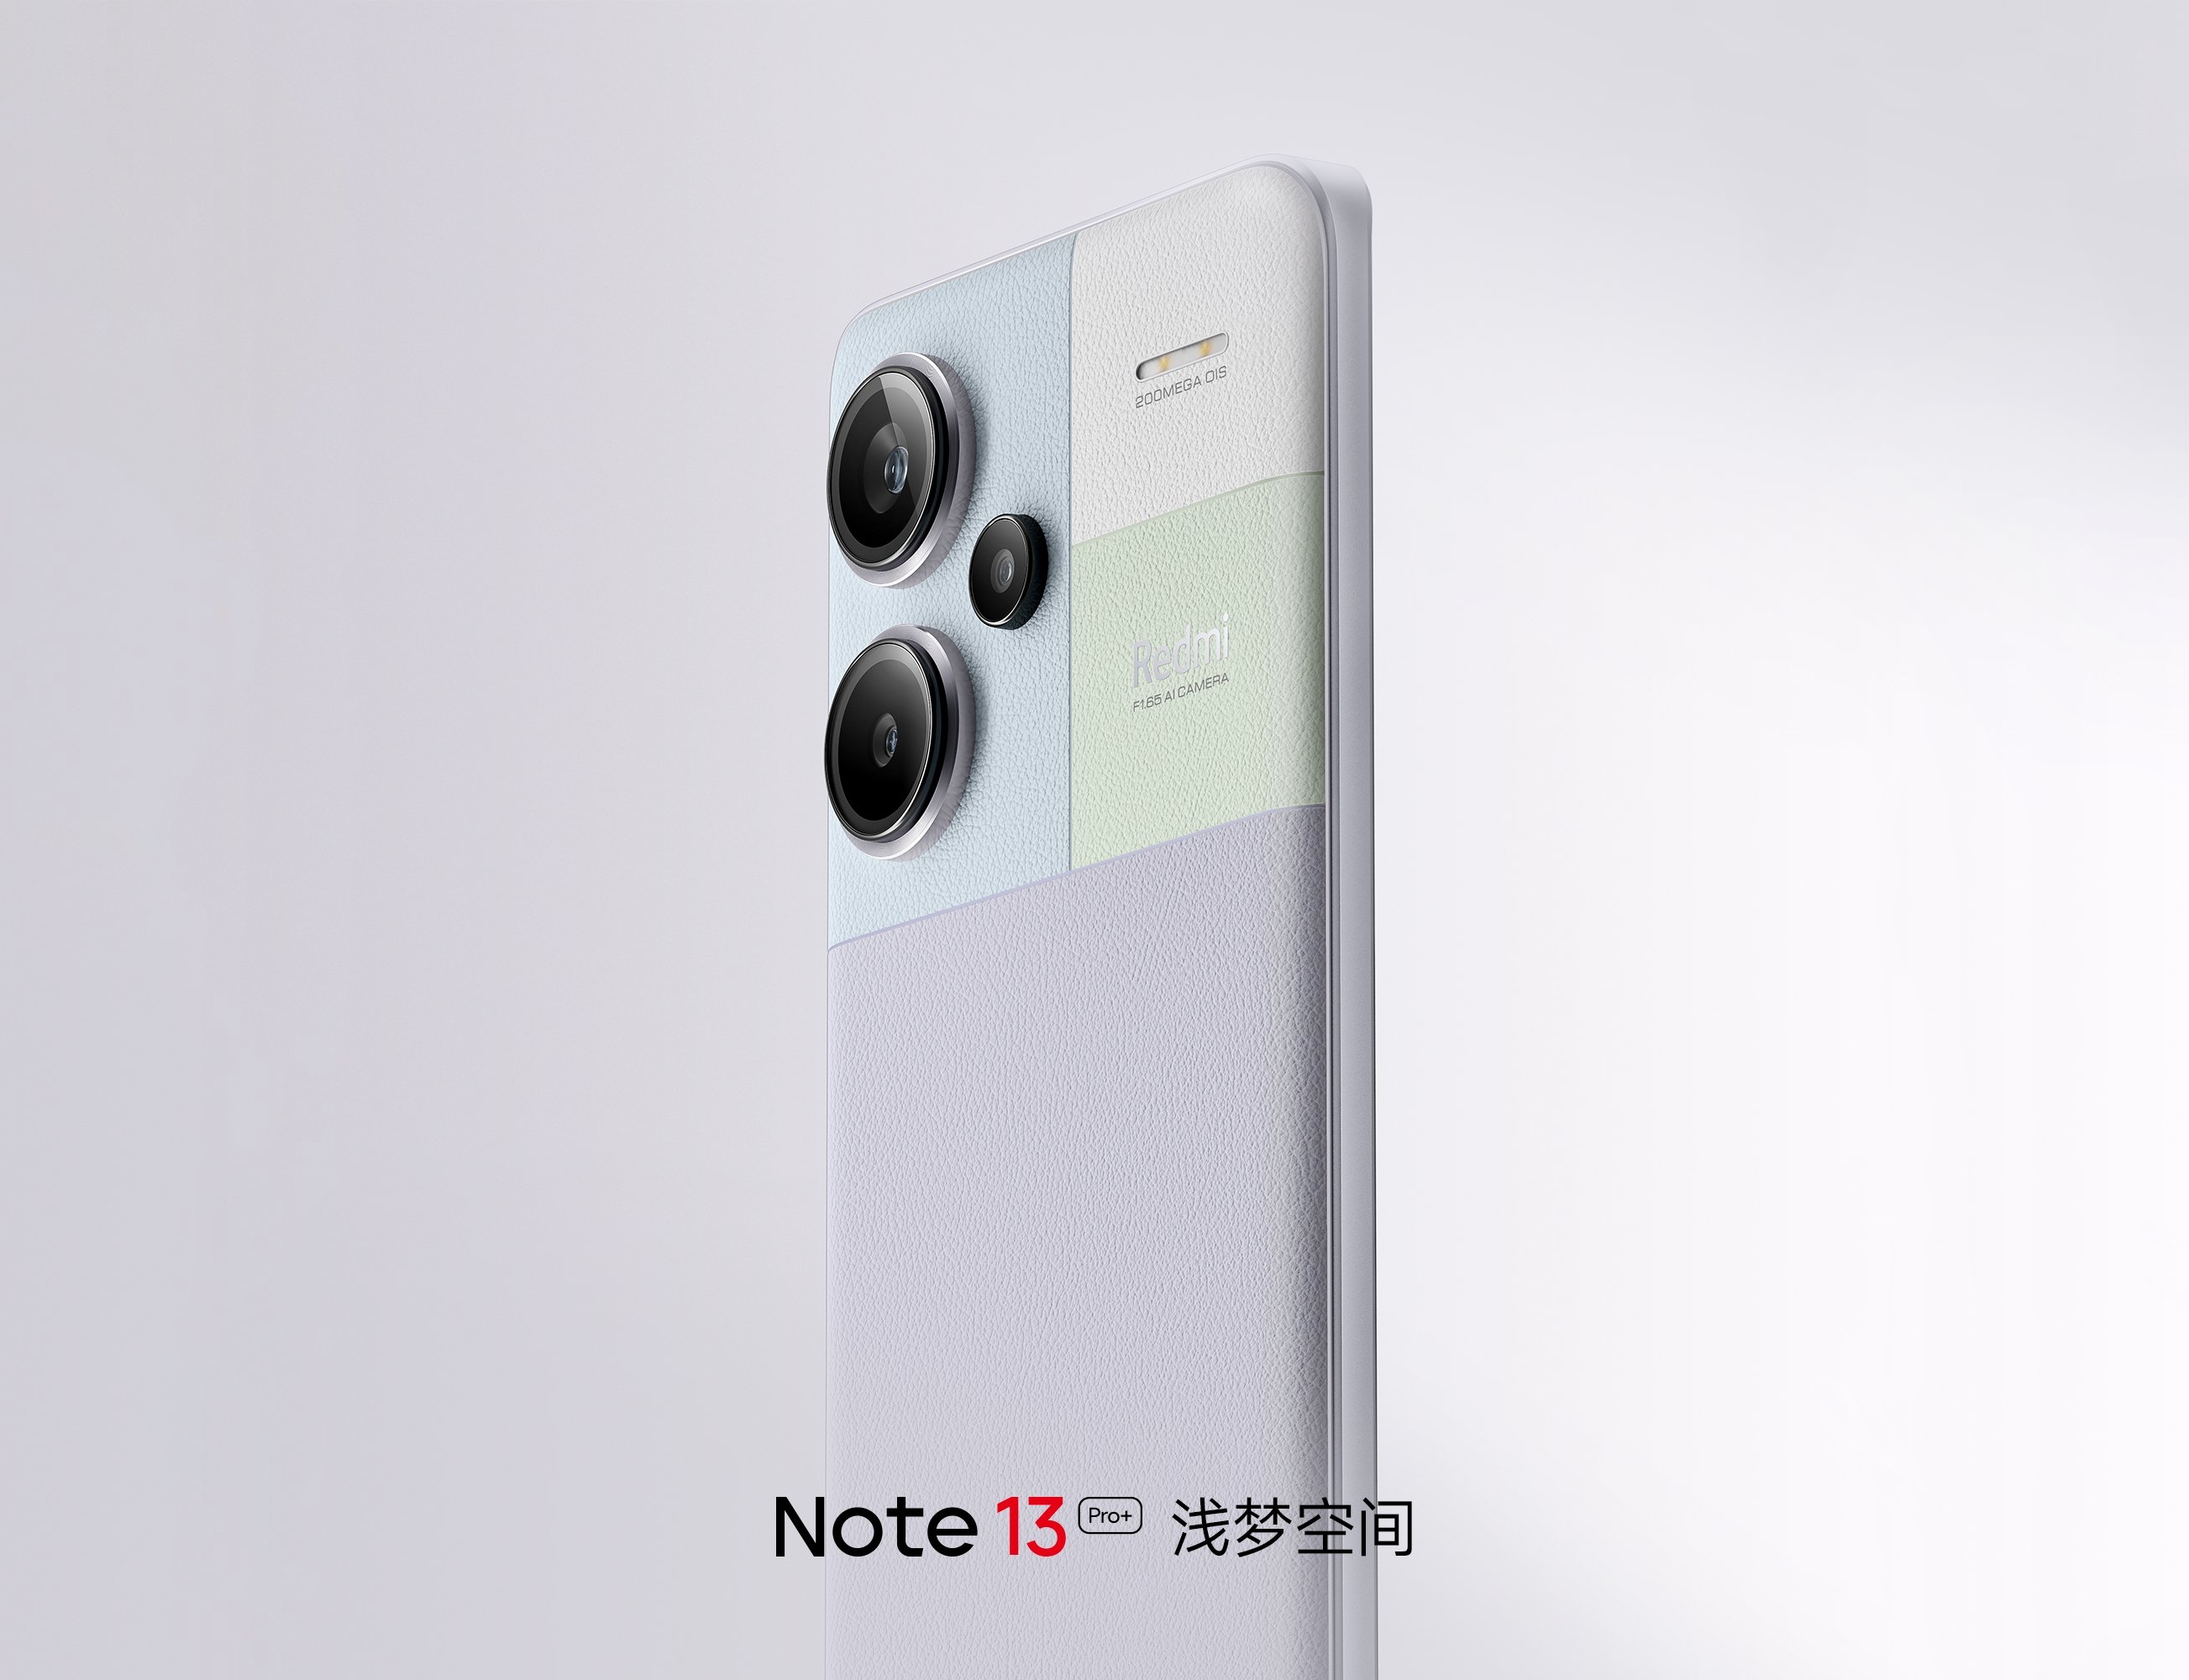 Pantalla OLED curvada, chip Dimensity 7200 Ultra y cámara de 200 MP: Las especificaciones del Redmi Note 13 Pro+ 5G han aparecido en Internet